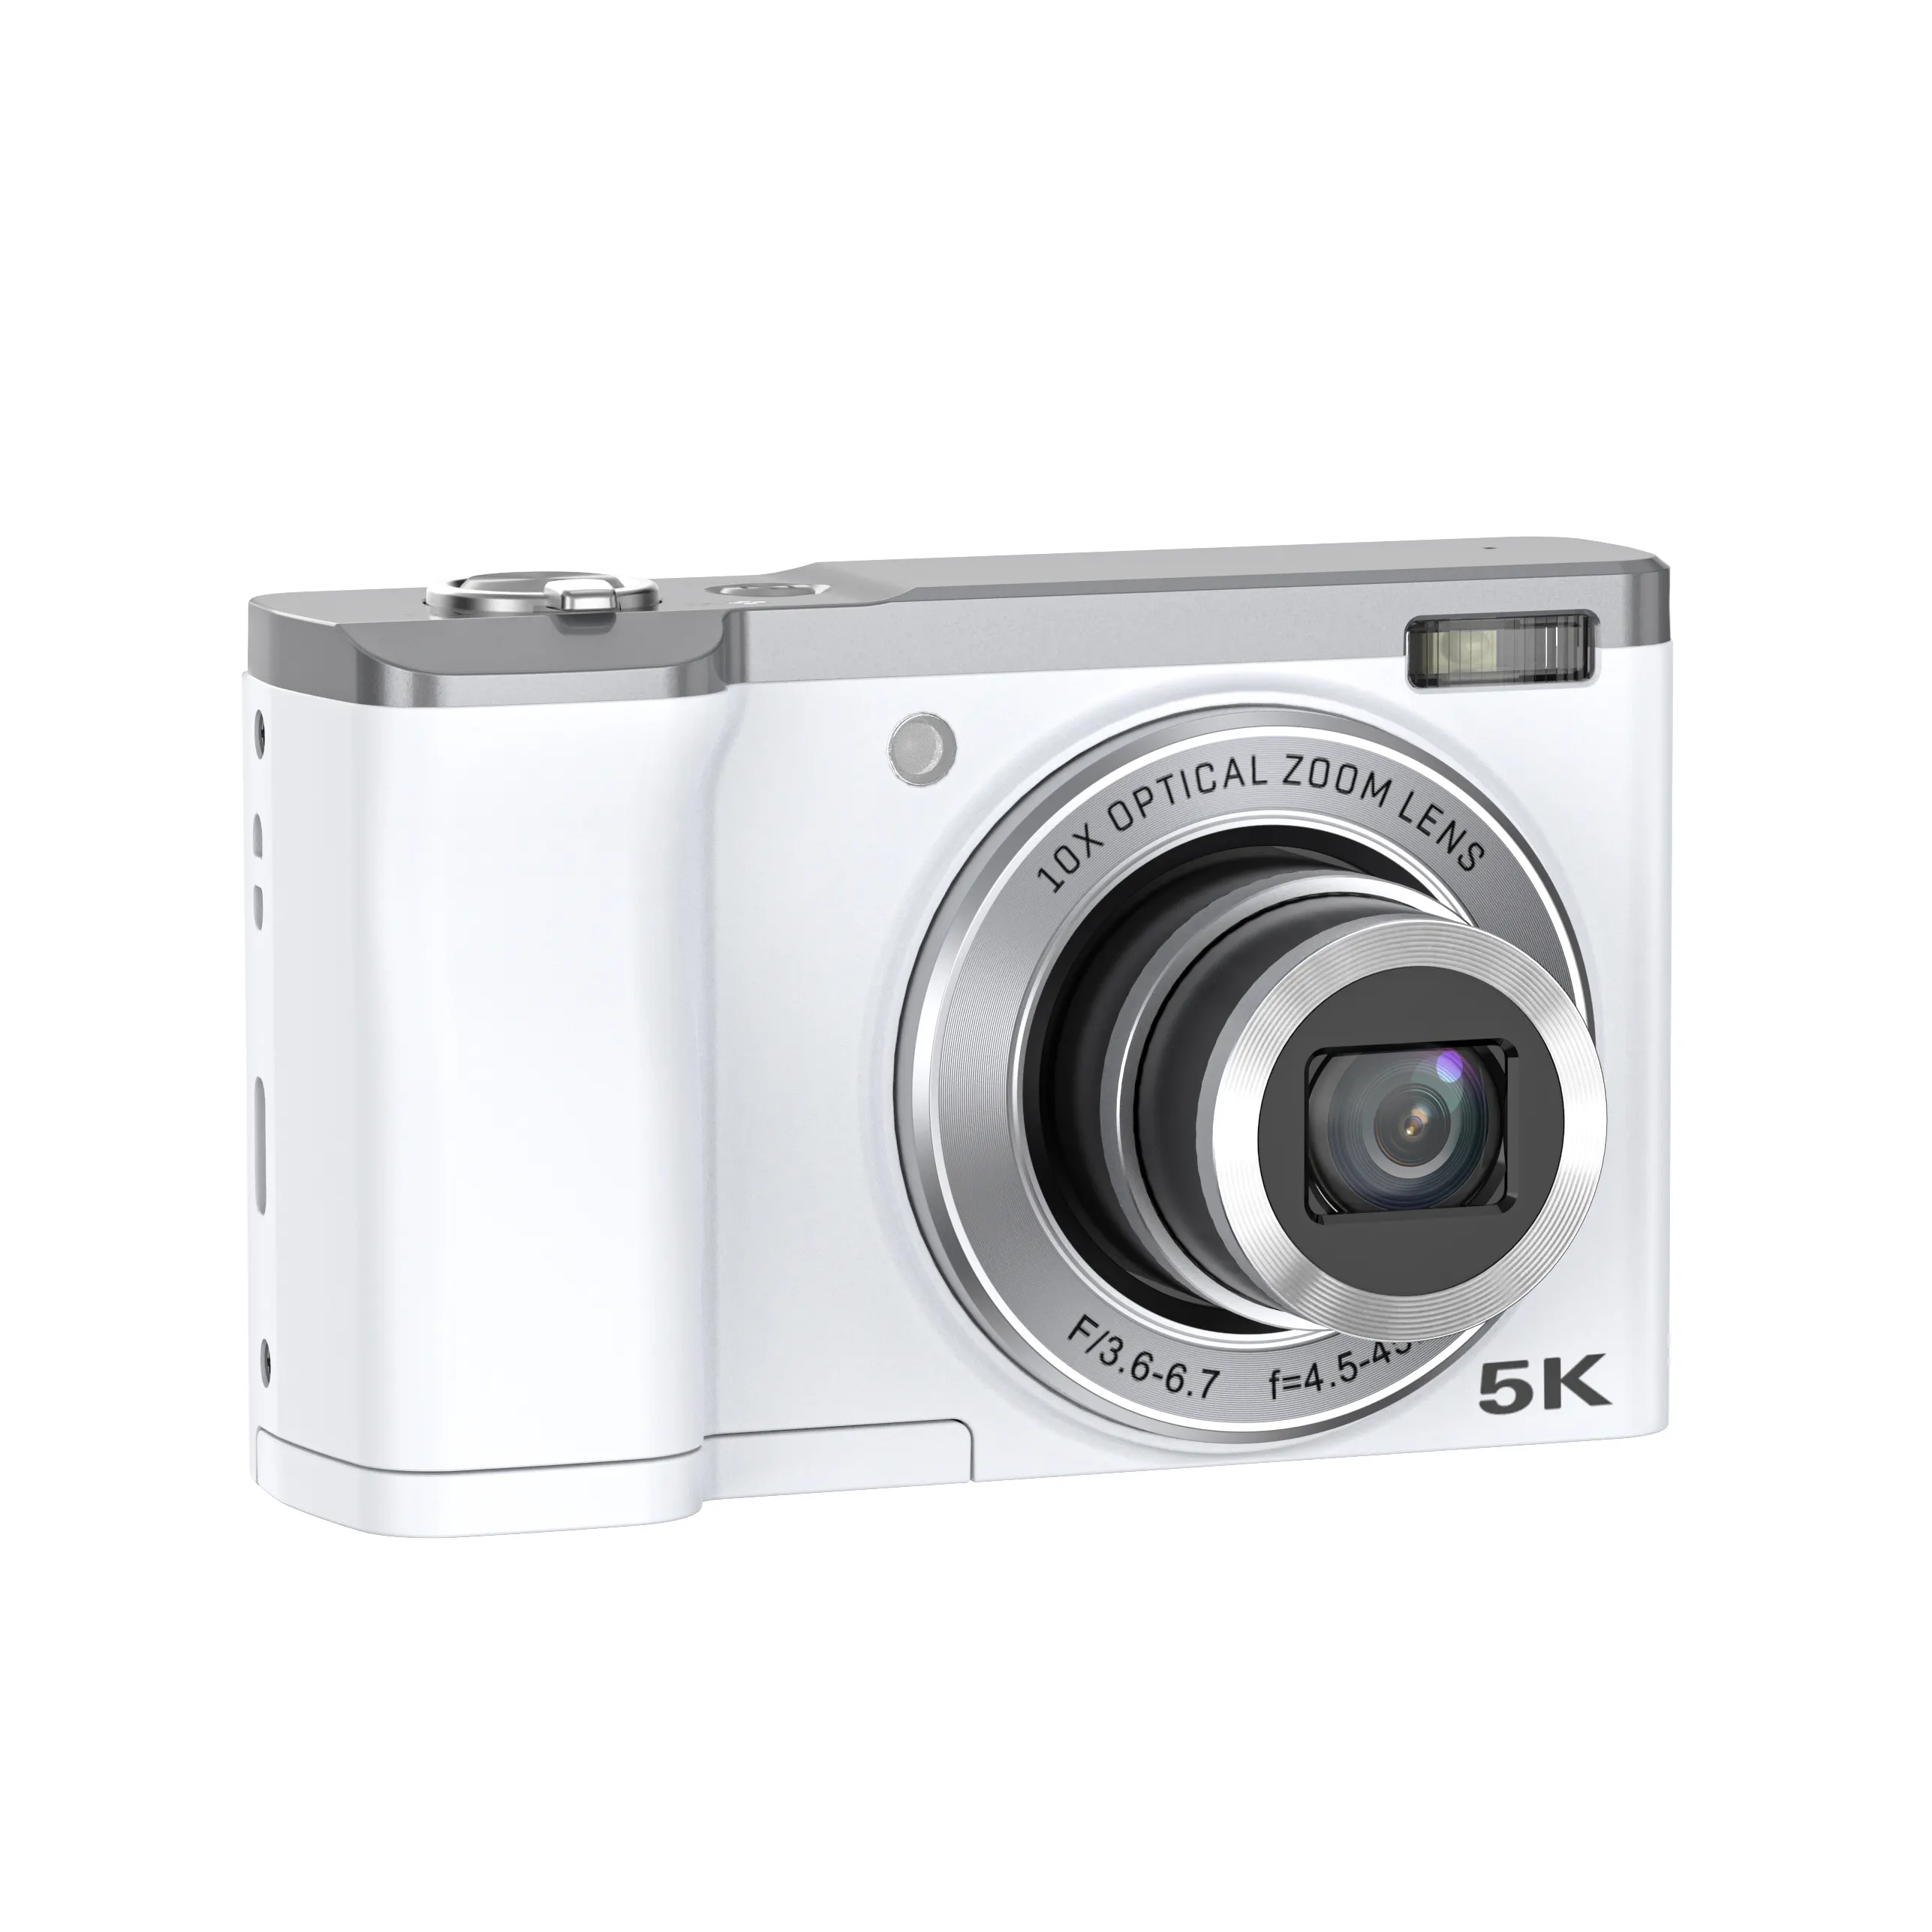 กล้องวิดีโอซูมออปติคอล5X 10X ความละเอียดสูง5K กล้องเซลฟี่ดิจิตอลระดับมืออาชีพ56MP